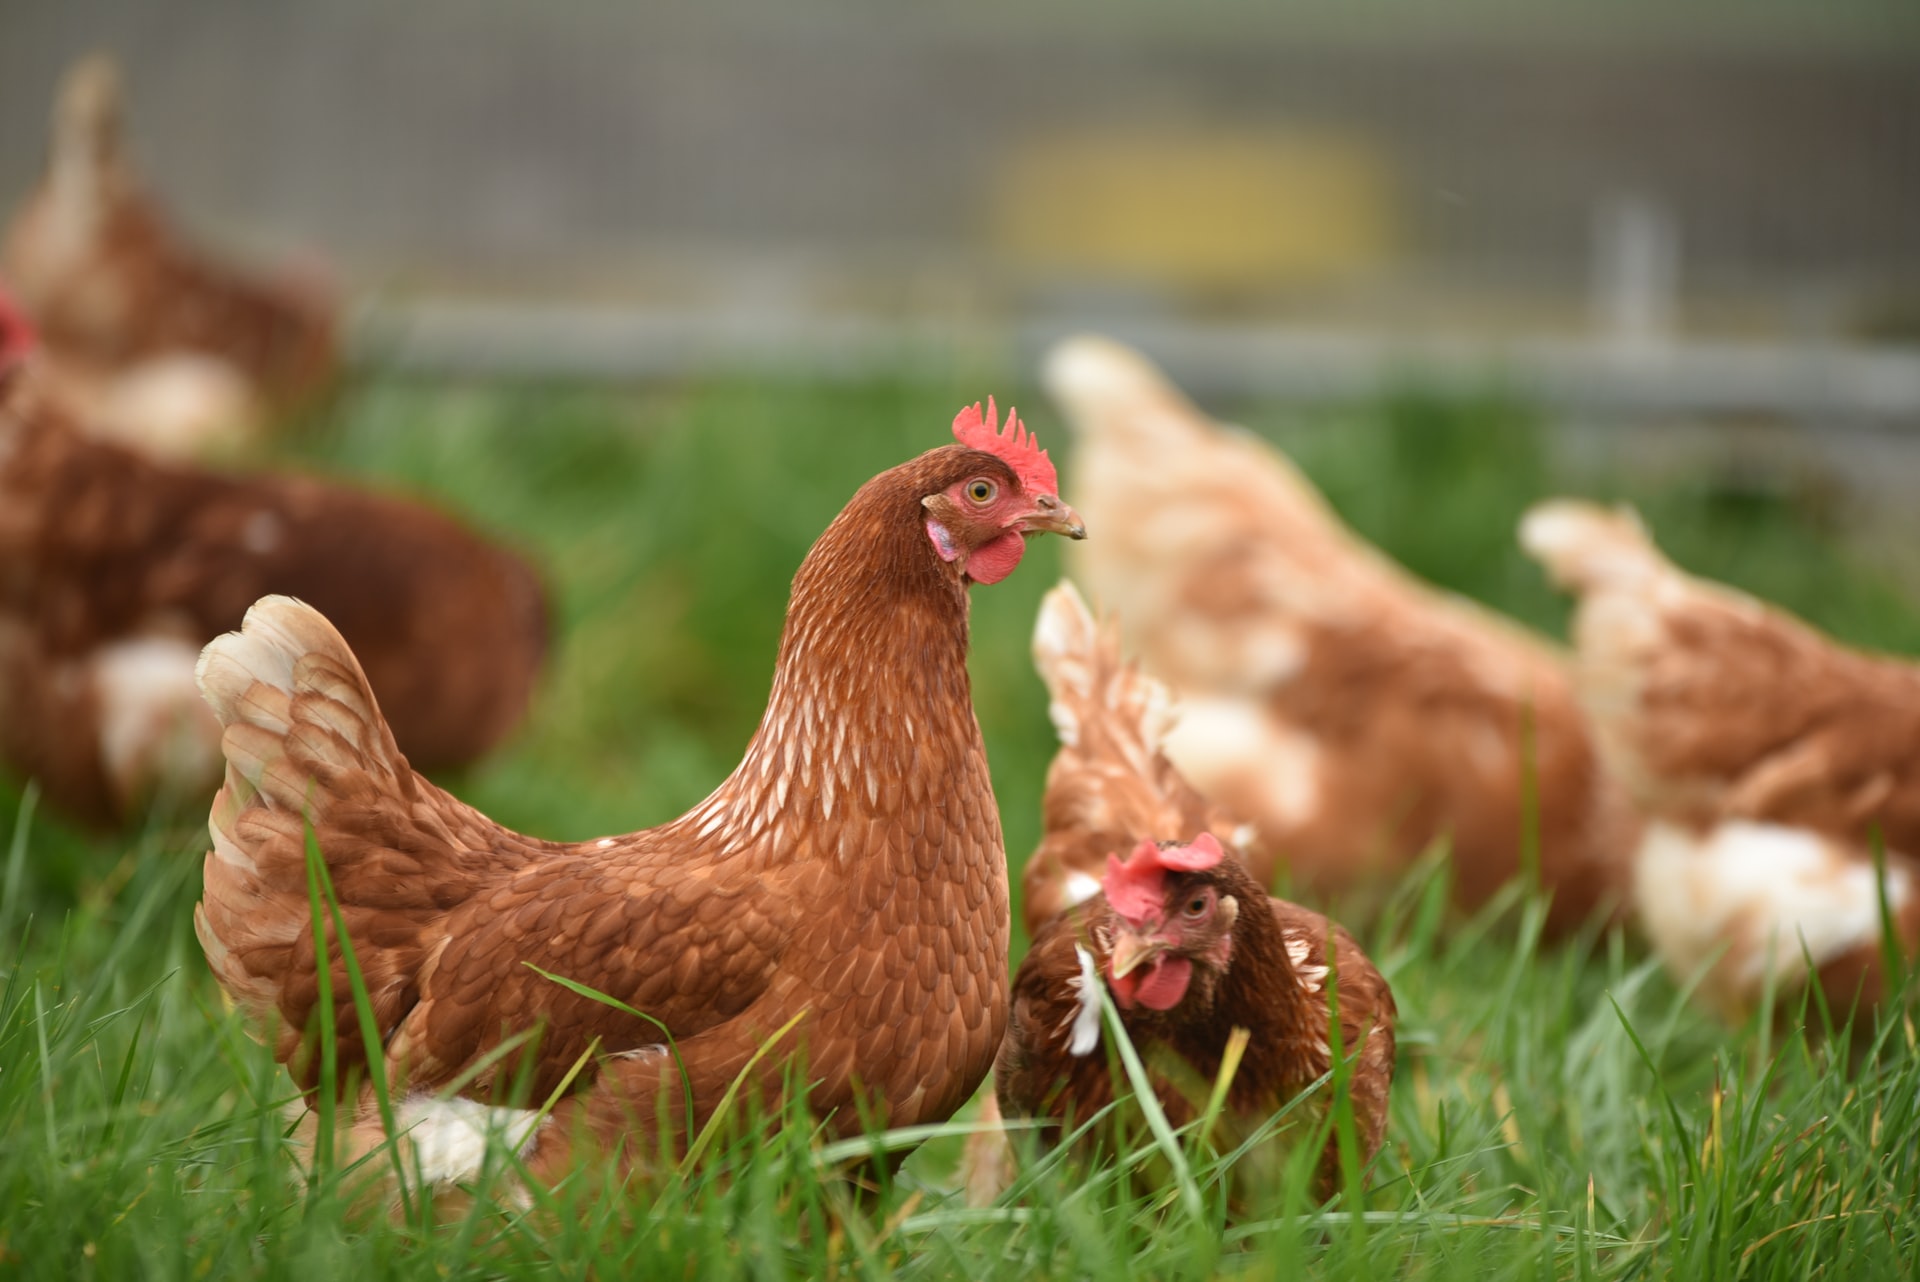 Yeni Araştırma: Tavuklar Ne Zaman, Nerede ve Nasıl Evcilleştirildi? -  Popular Science